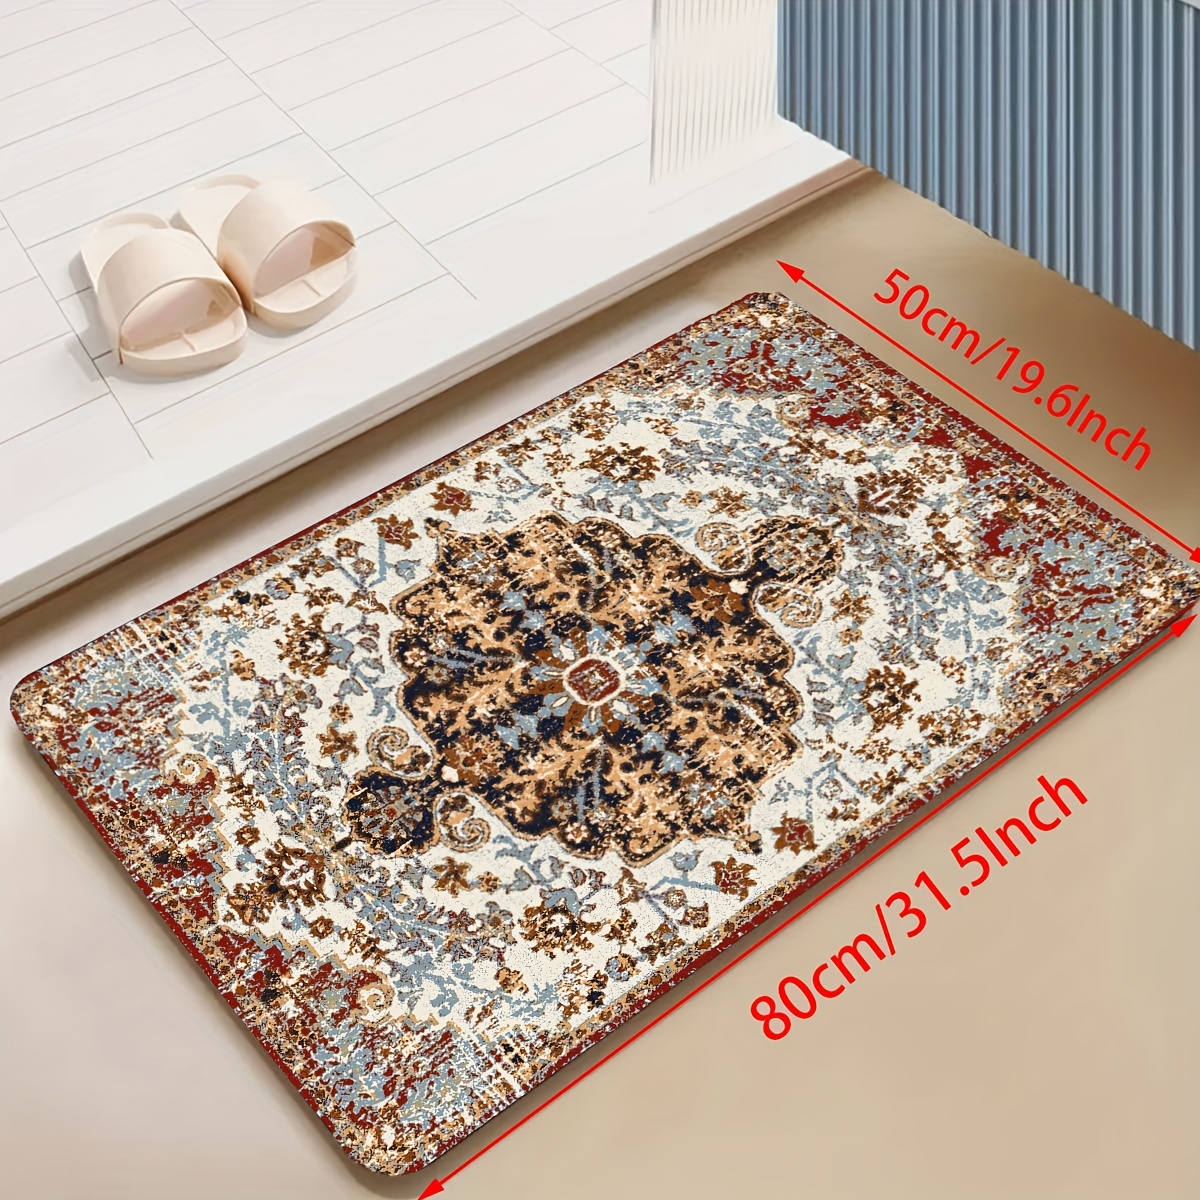 OPLJ 3D Stone Floor Mats puerta alfombra cocina alfombra antideslizante  lavable alfombras para cocina absorbente felpudo A11 23.6x70.9 in